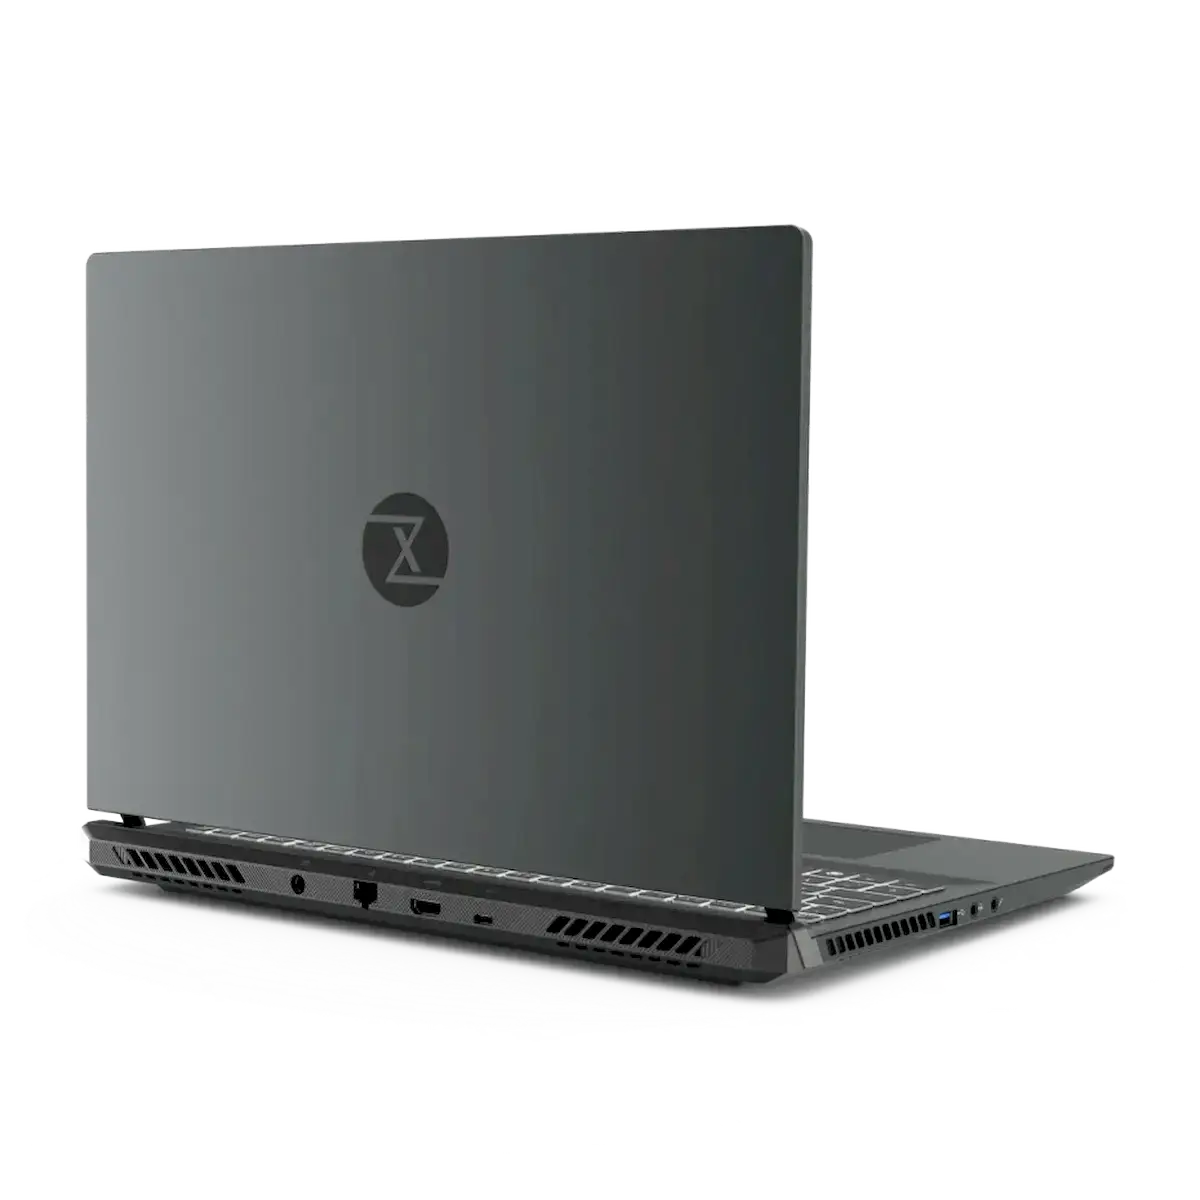 TUXEDO Sirius 16, o primeiro laptop gamer com AMD da TUXEDO